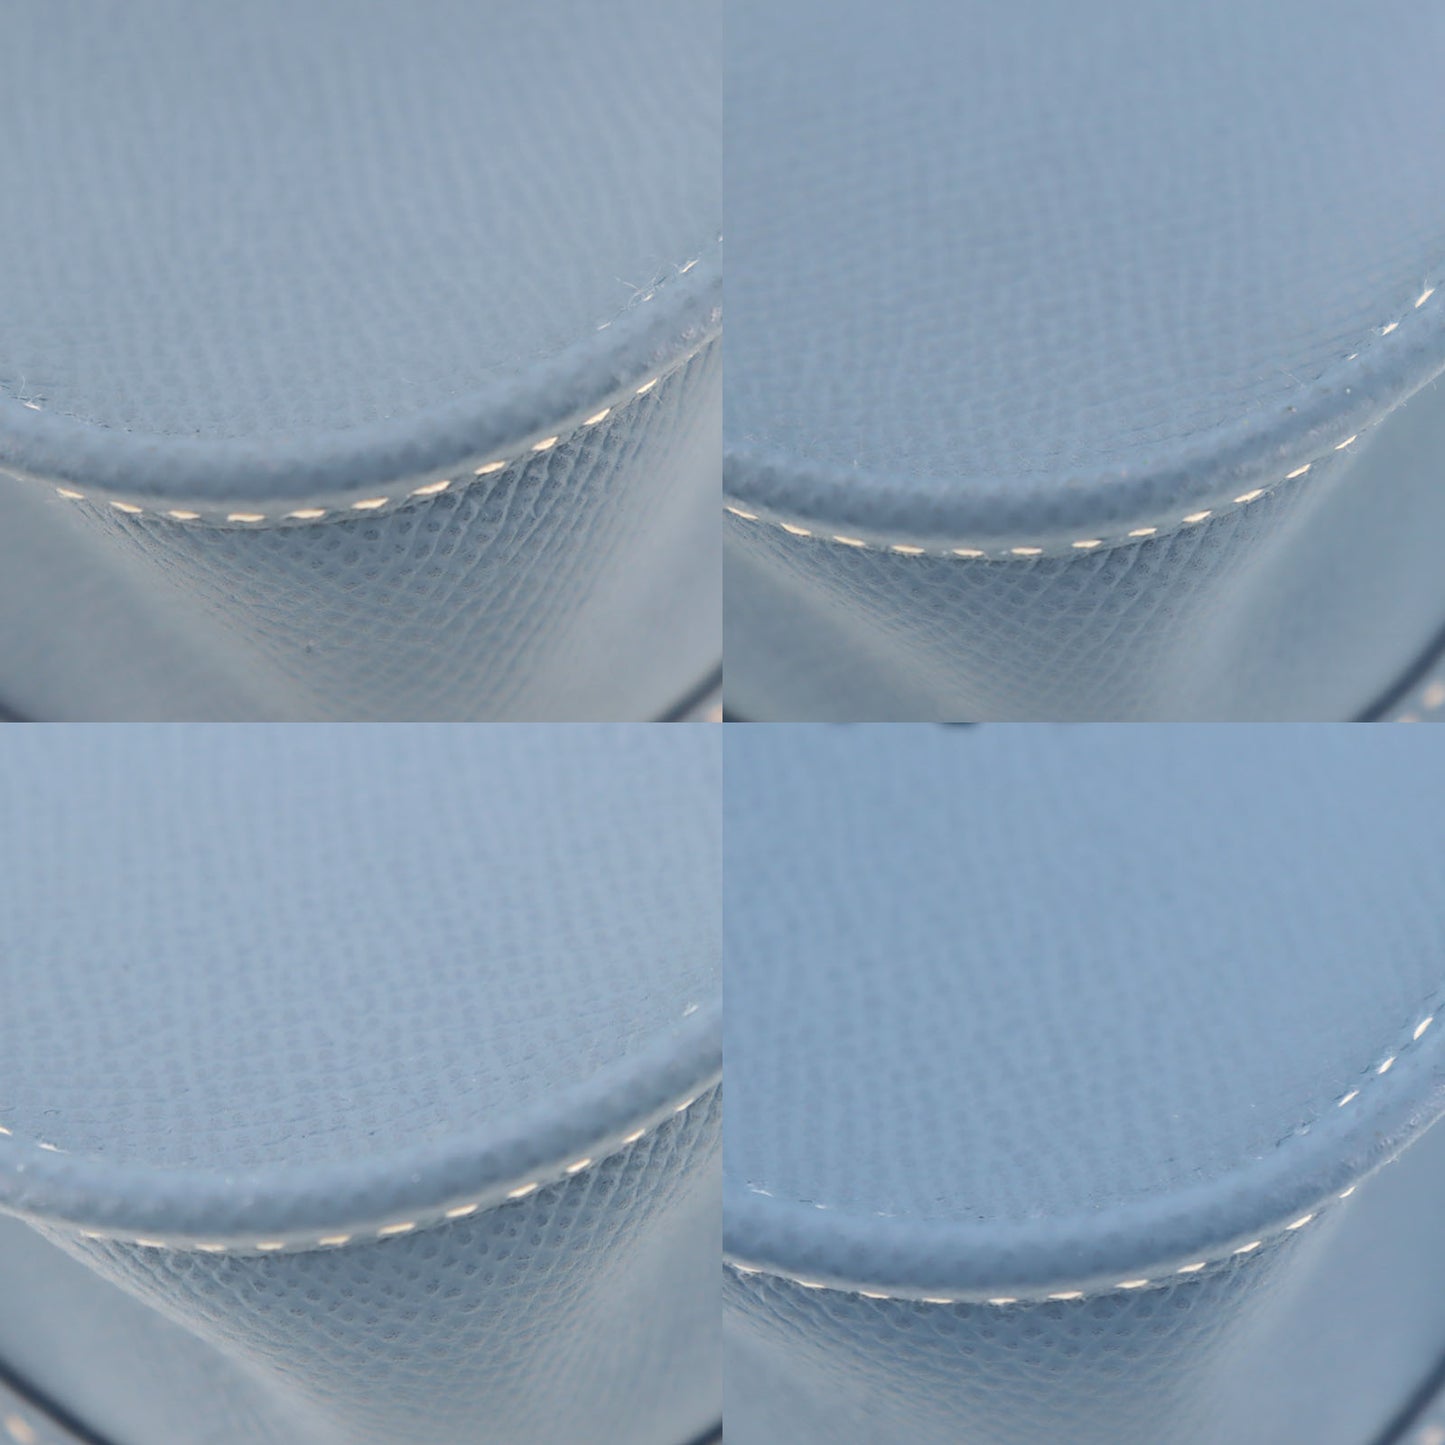 HERMES Evelyn TPM Used Shoulder Bag Epsom Leather Blue France #BK562 –  VINTAGE MODE JP